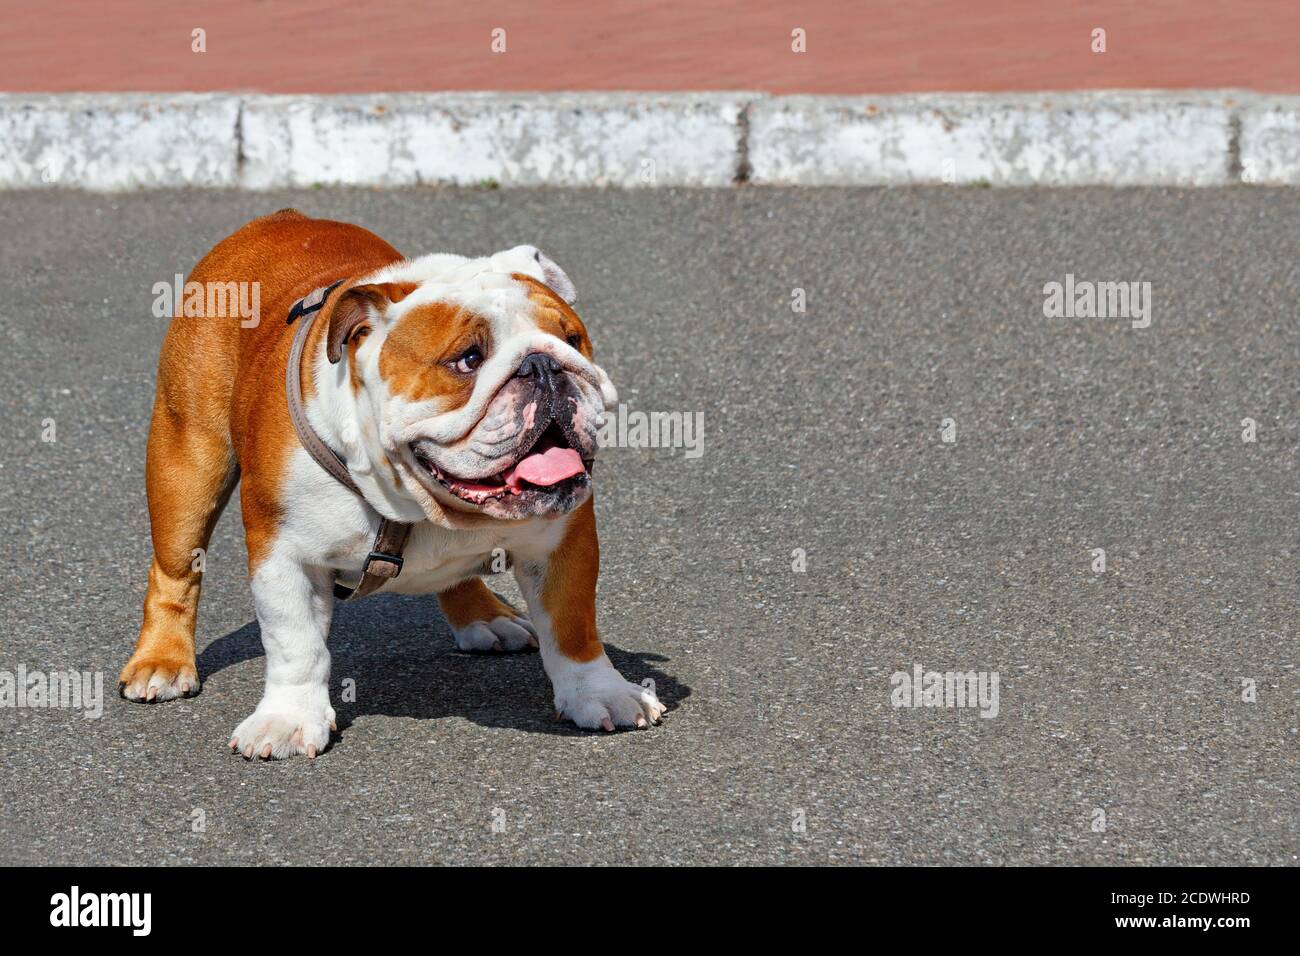 Ritratto di un grande bulldog inglese con un collare in pelle che cammina sul marciapiede asfaltato. Foto Stock